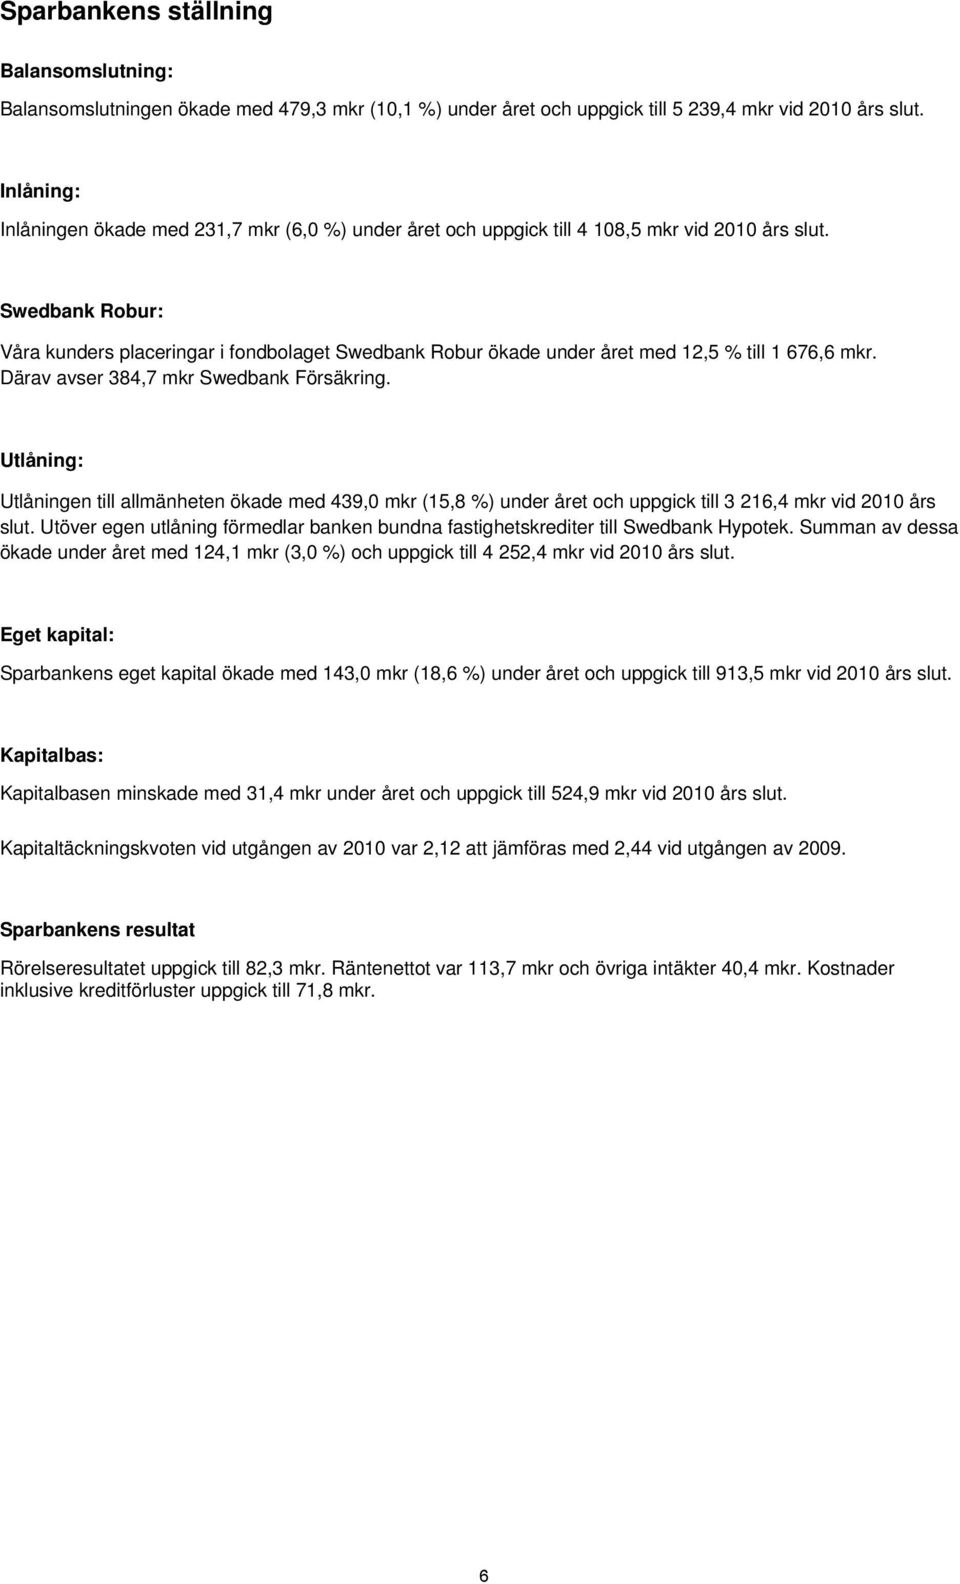 Swedbank Robur: Våra kunders placeringar i fondbolaget Swedbank Robur ökade under året med 12,5 % till 1 676,6 mkr. Därav avser 384,7 mkr Swedbank Försäkring.